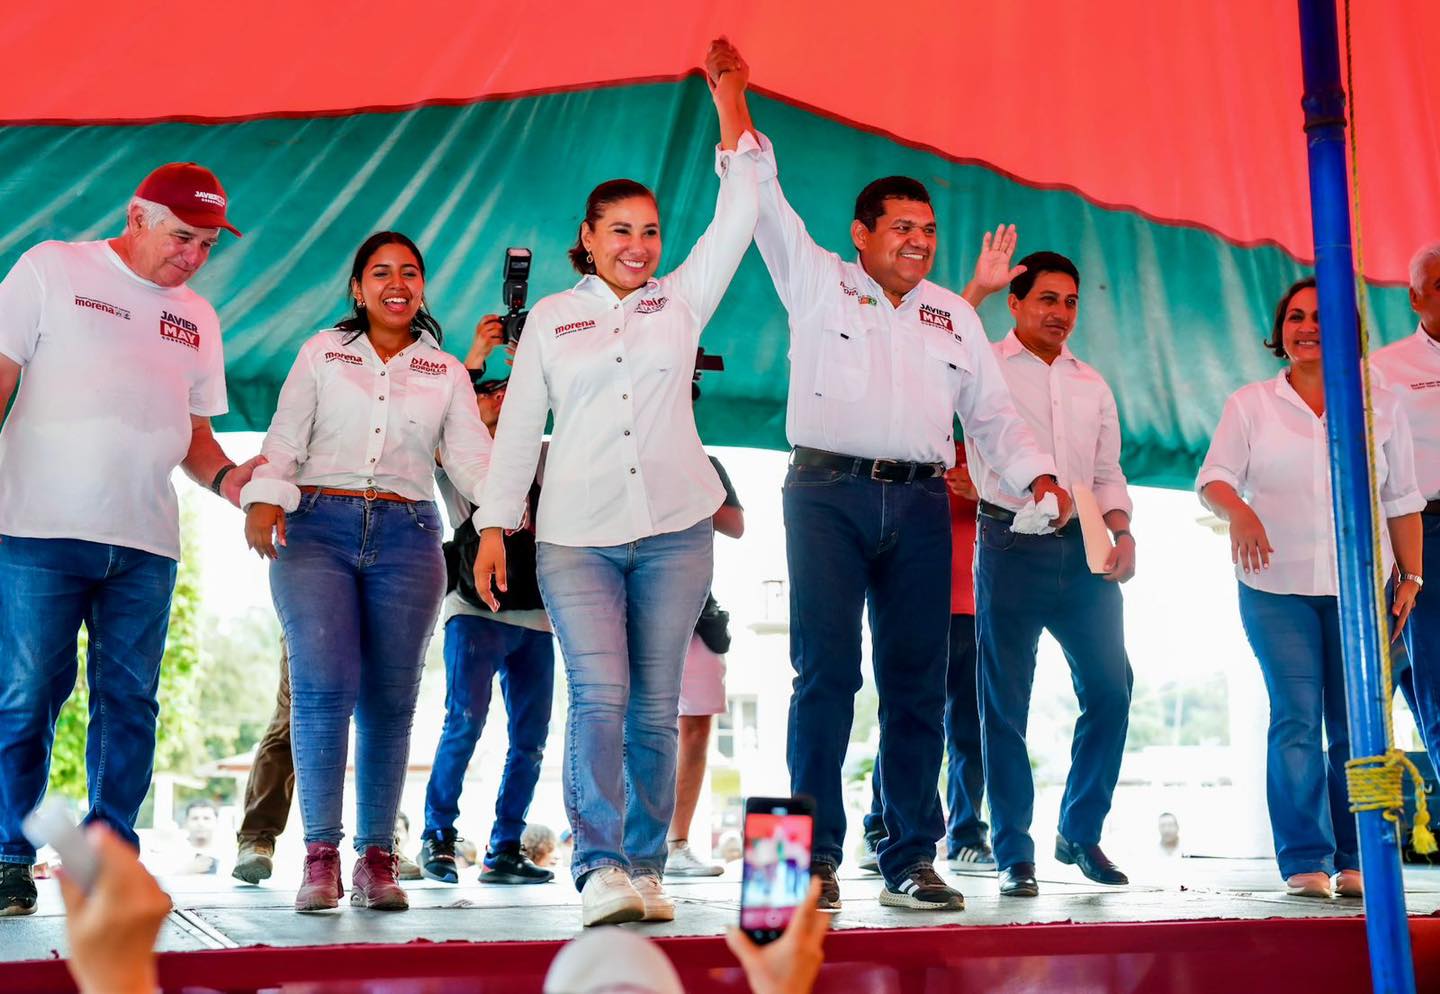 2000 viviendas para Cunduacán, promete María Chonita